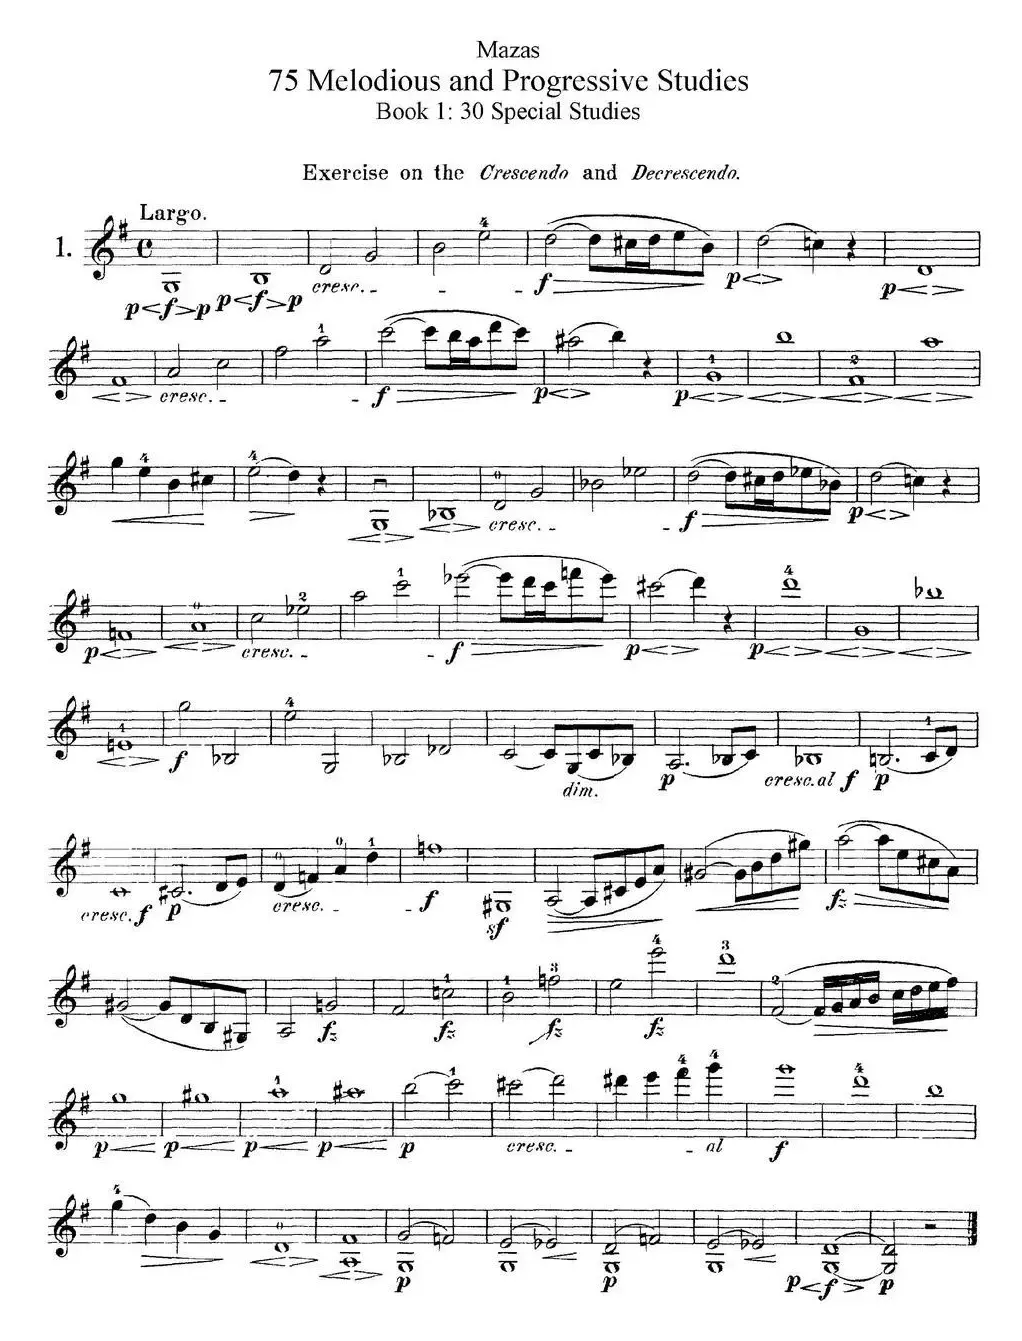 马扎斯小提琴练习曲 Op.36 第一册 特殊练习曲（1）